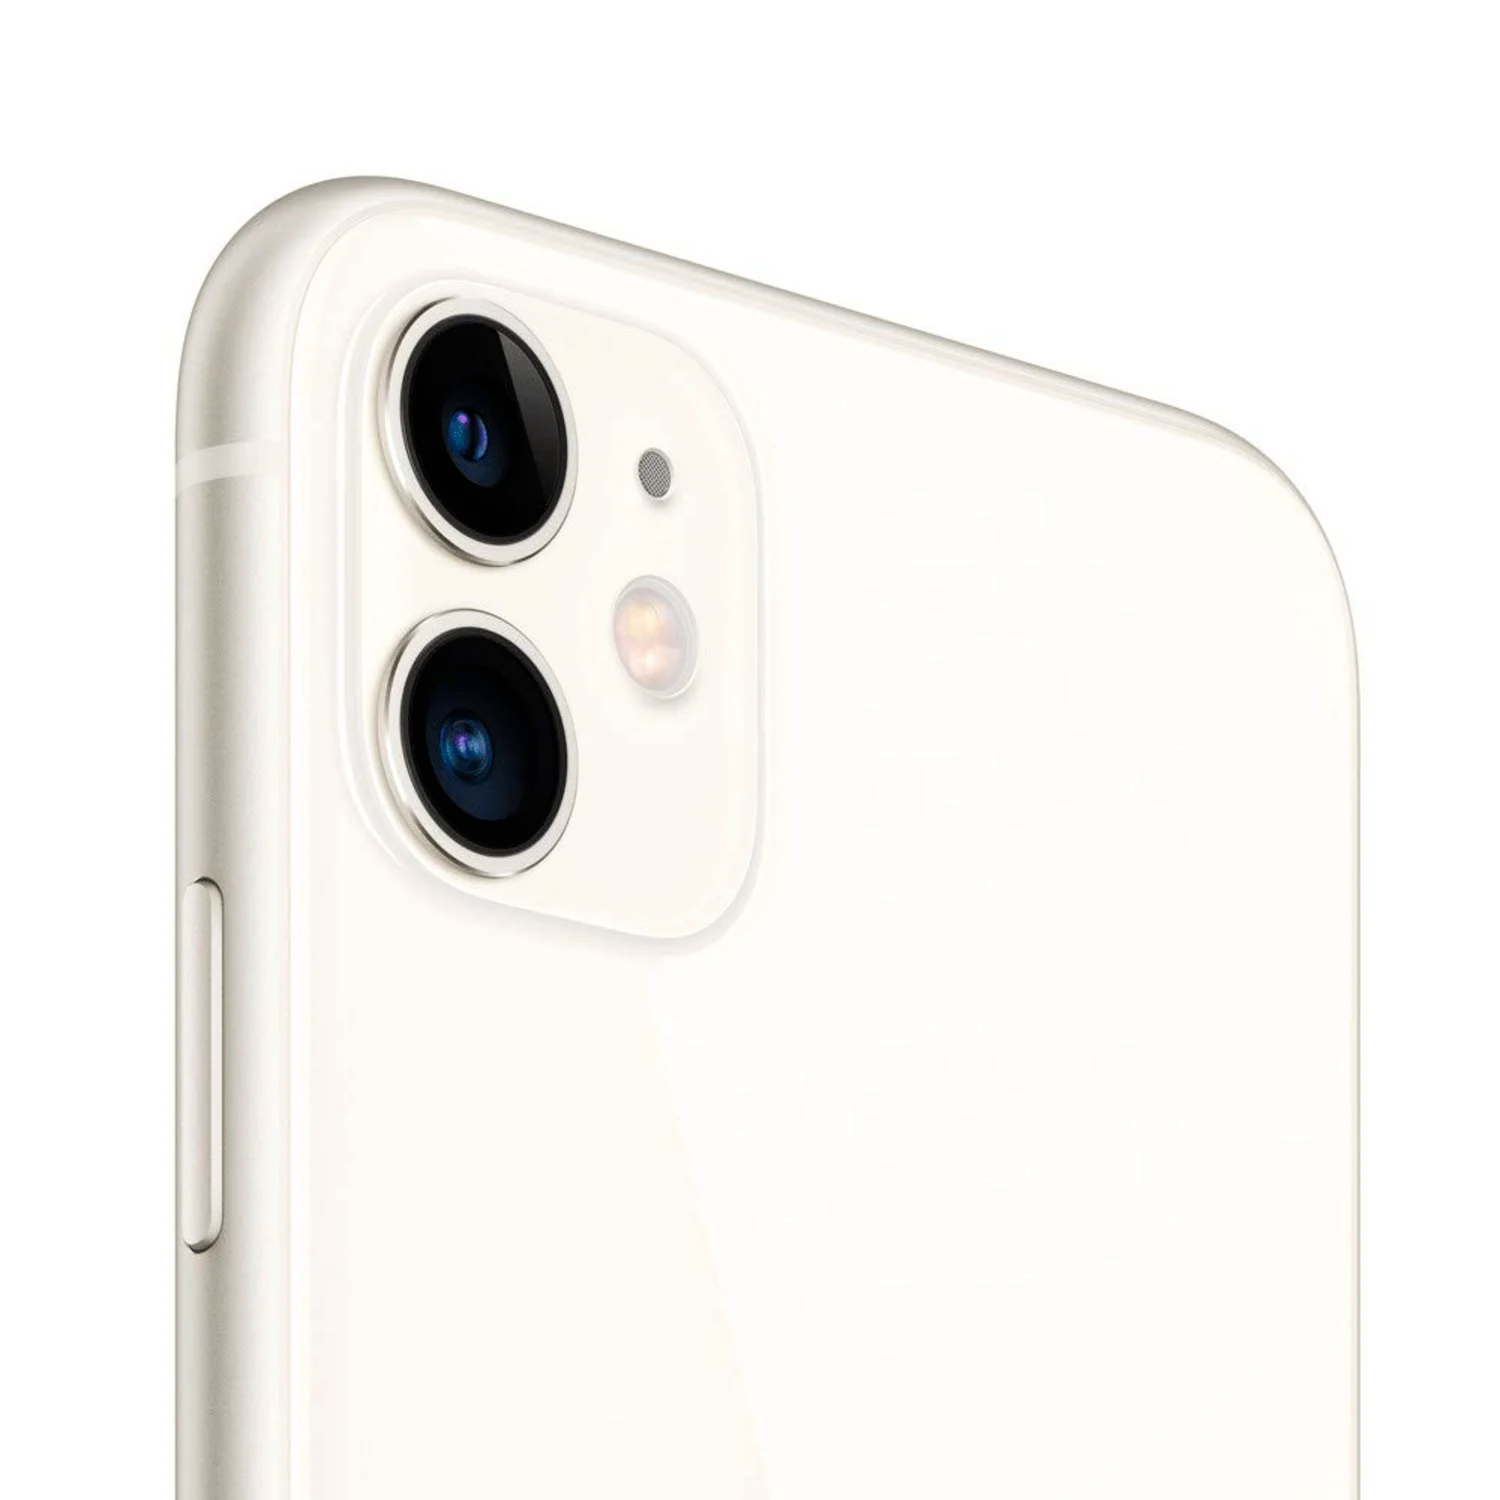 Celular Apple iPhone 11 A2111 128GB / 4GB RAM / Tela 6.1" / Câmeras de 12MP + 12MP e 12MP - Branco (Só Aparelho) (SWAP A)